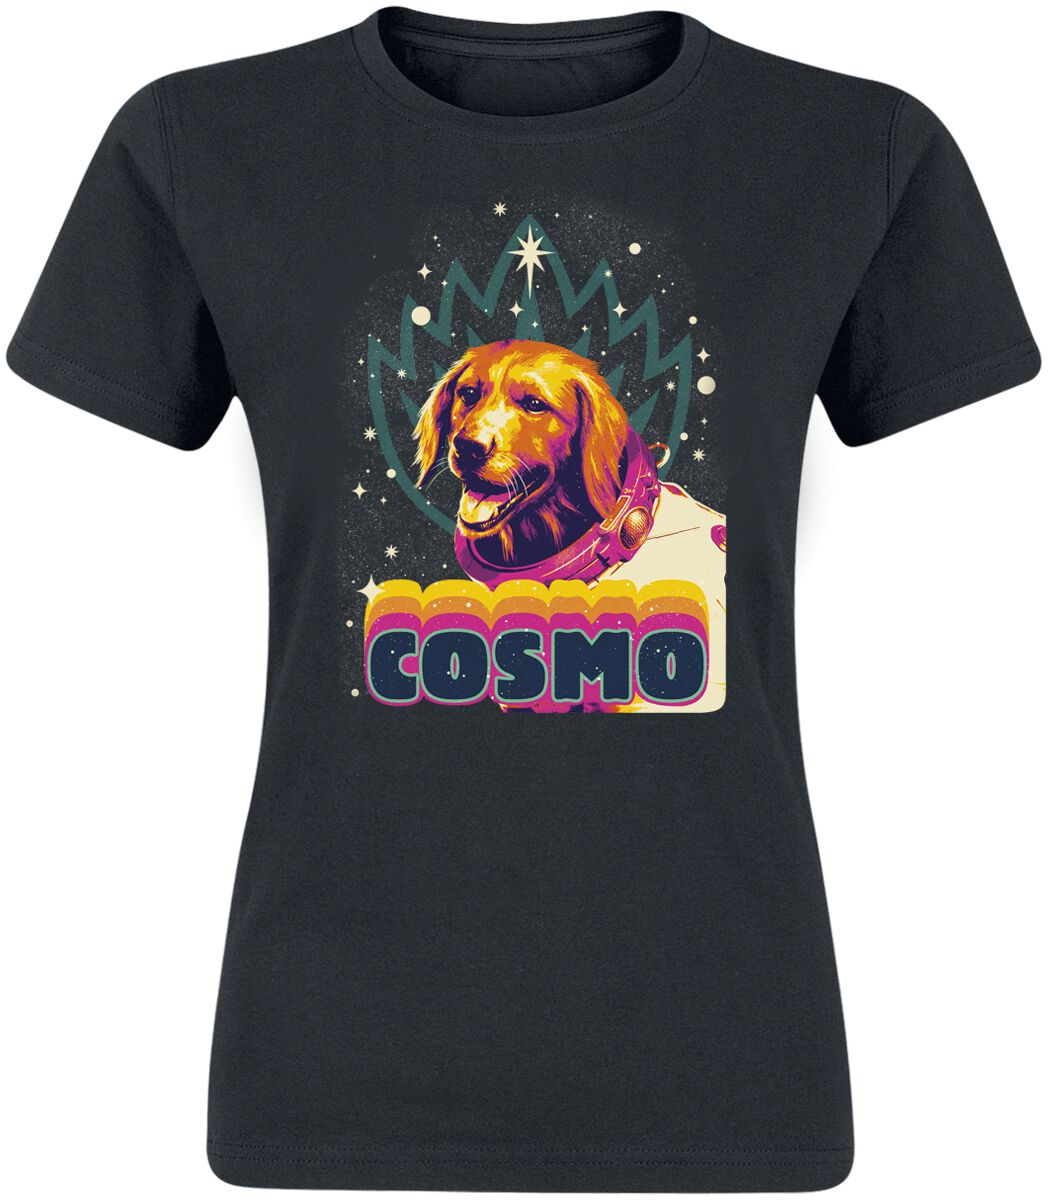 Guardians Of The Galaxy - Marvel T-Shirt - Vol. 3 - Cosmo - S bis L - für Damen - Größe L - schwarz  - EMP exklusives Merchandise!